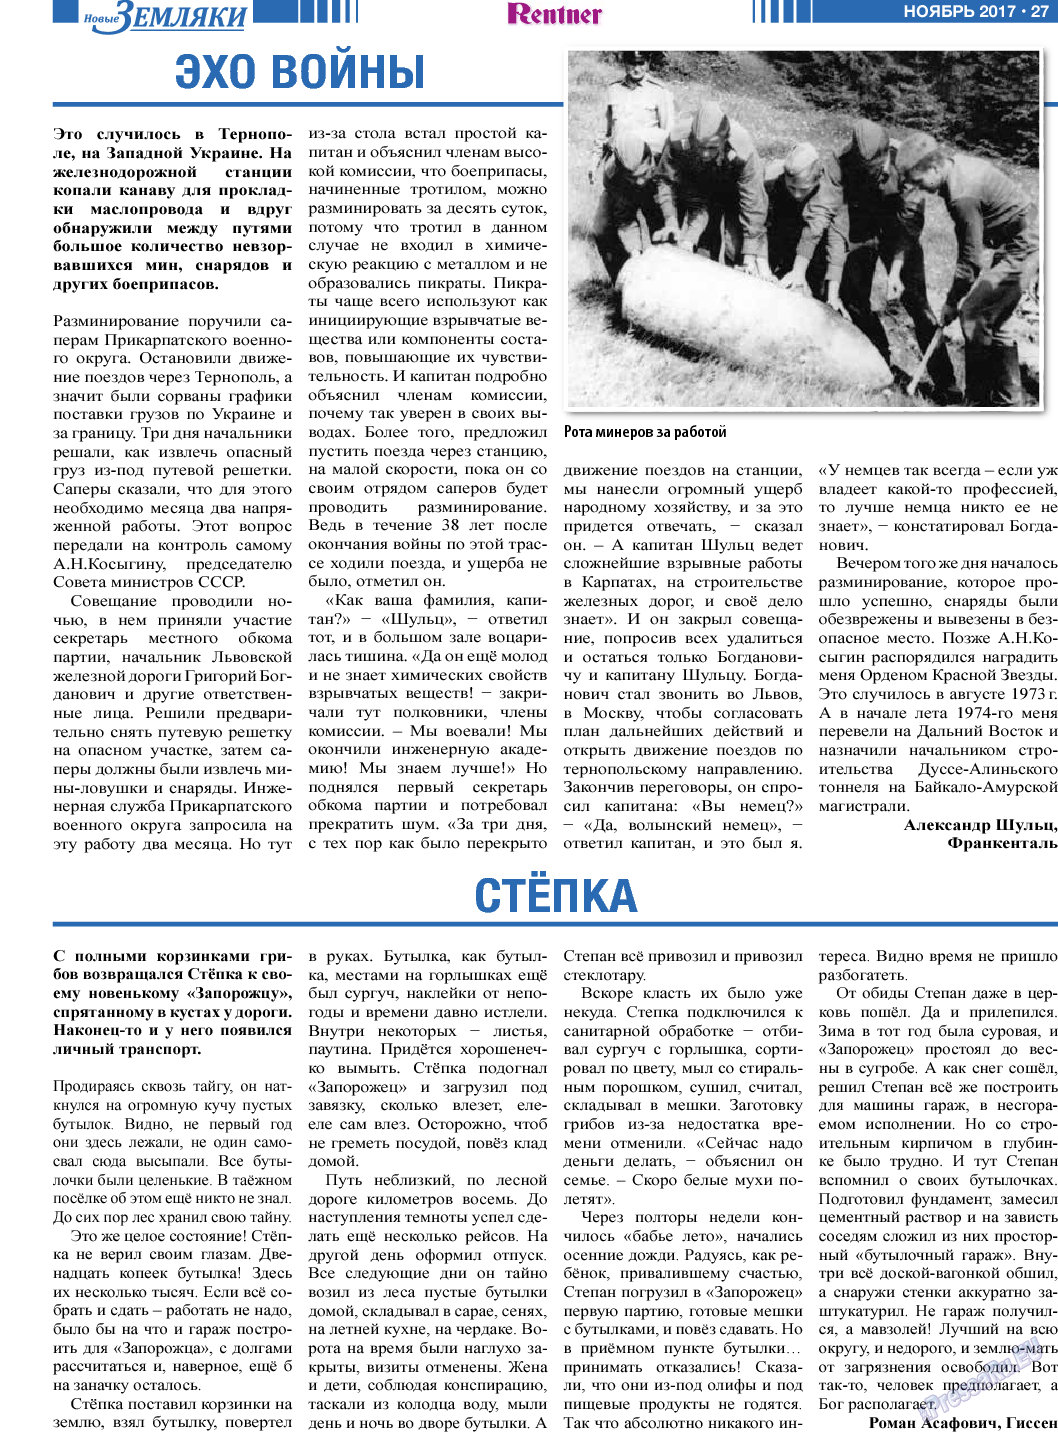 Новые Земляки, газета. 2017 №11 стр.27